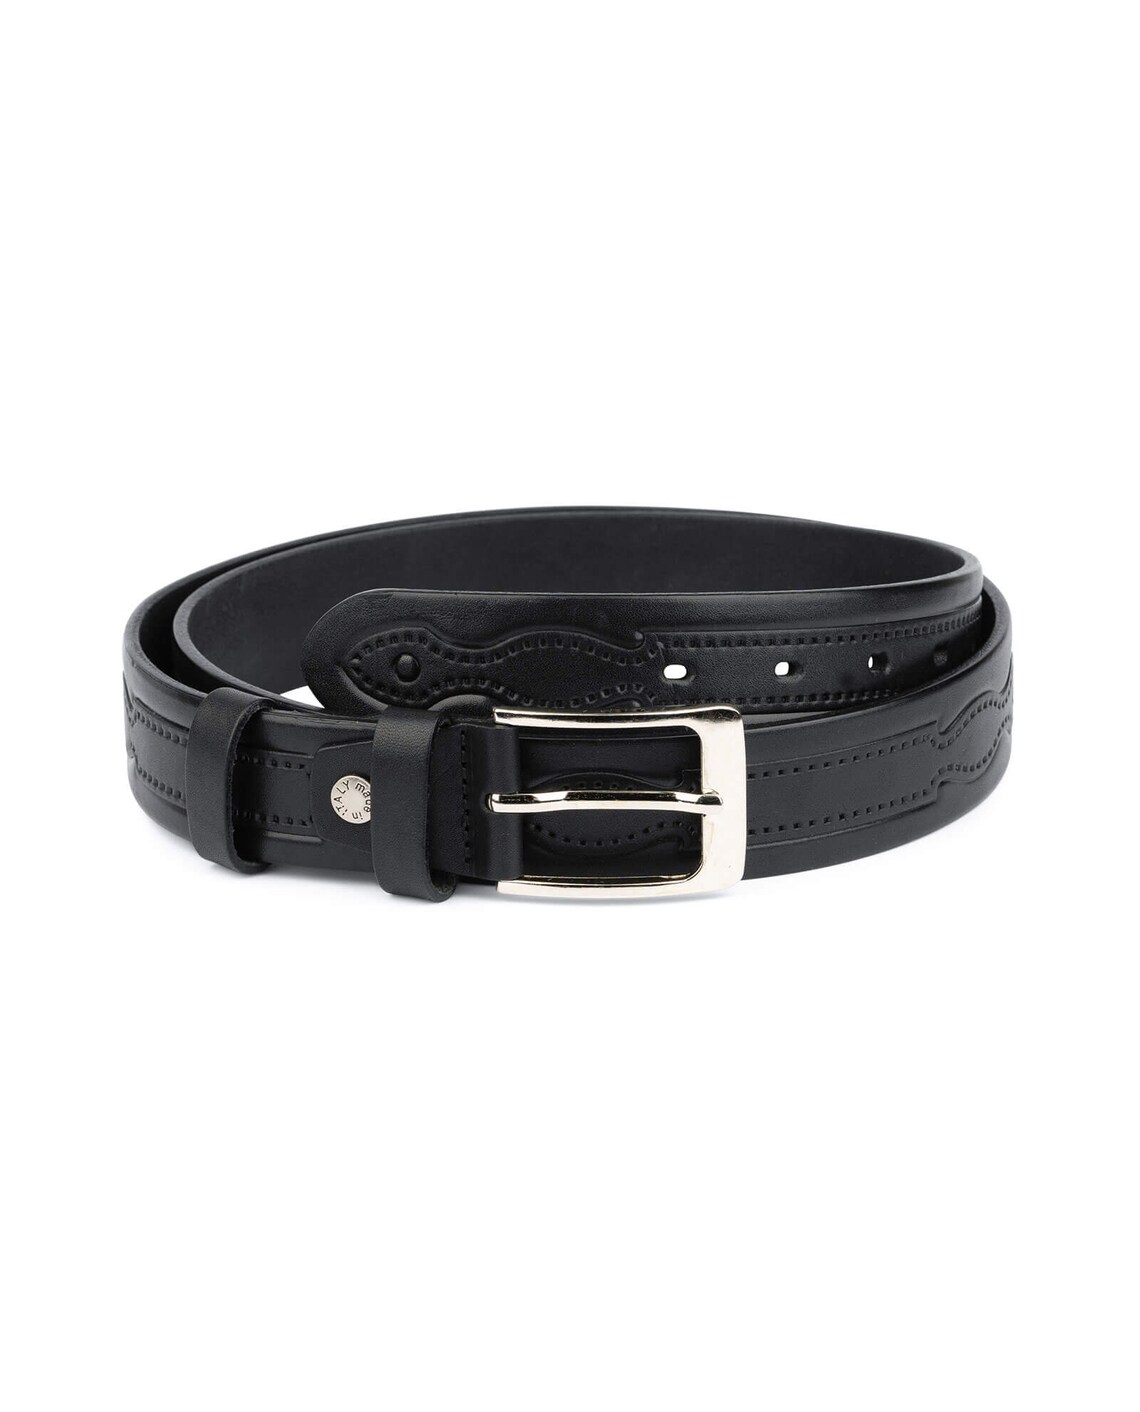 Buy Black Tooled Leather Belt | Full Grain 35 mm | LeatherBeltsOnline.com